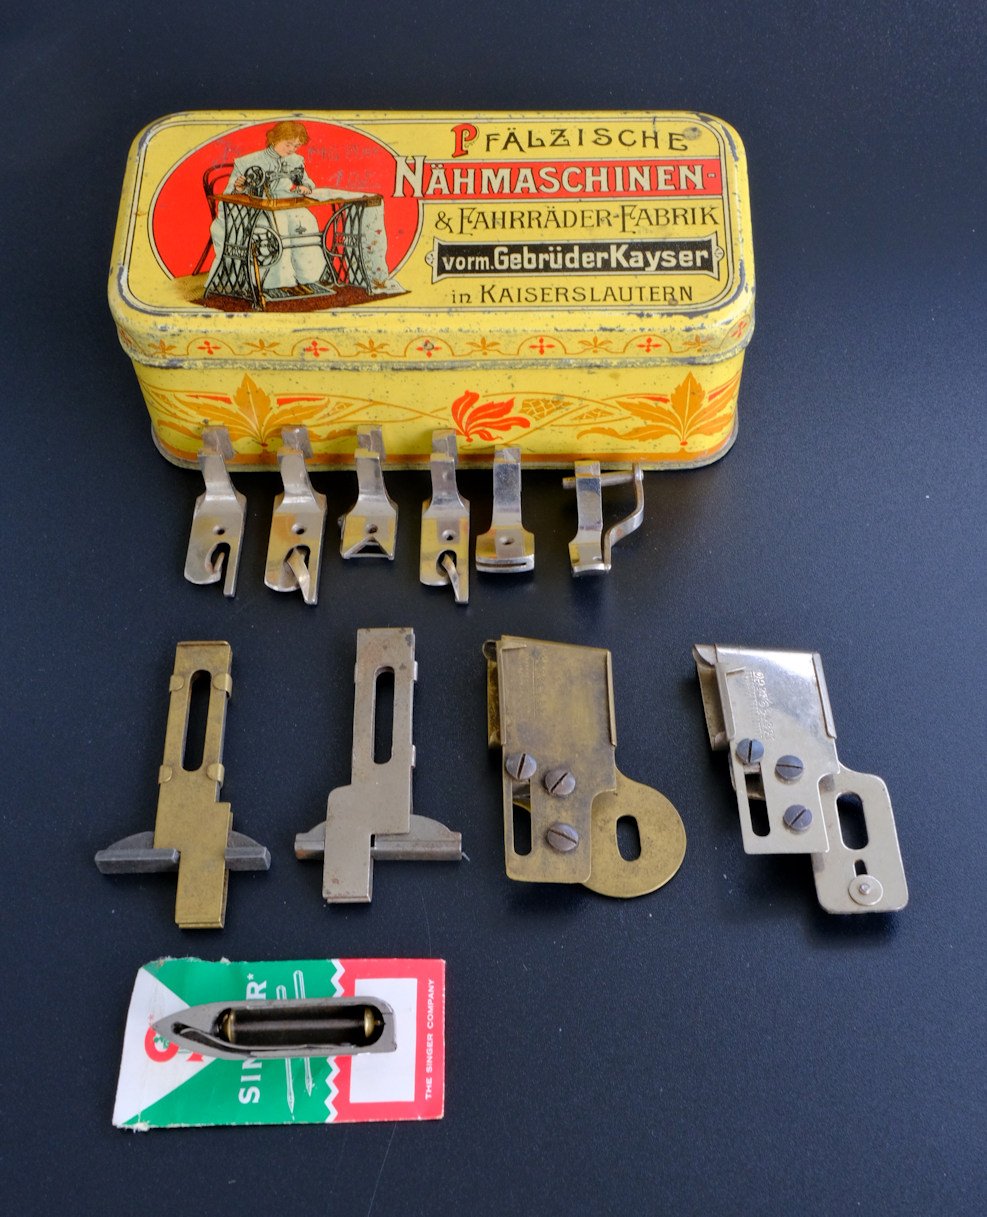 Nähmaschinen-Werkzeugbox der Gebrüder Kayser, Pfälzische Nähmaschinenfabrik (Freilichtmuseum Roscheider Hof CC0)